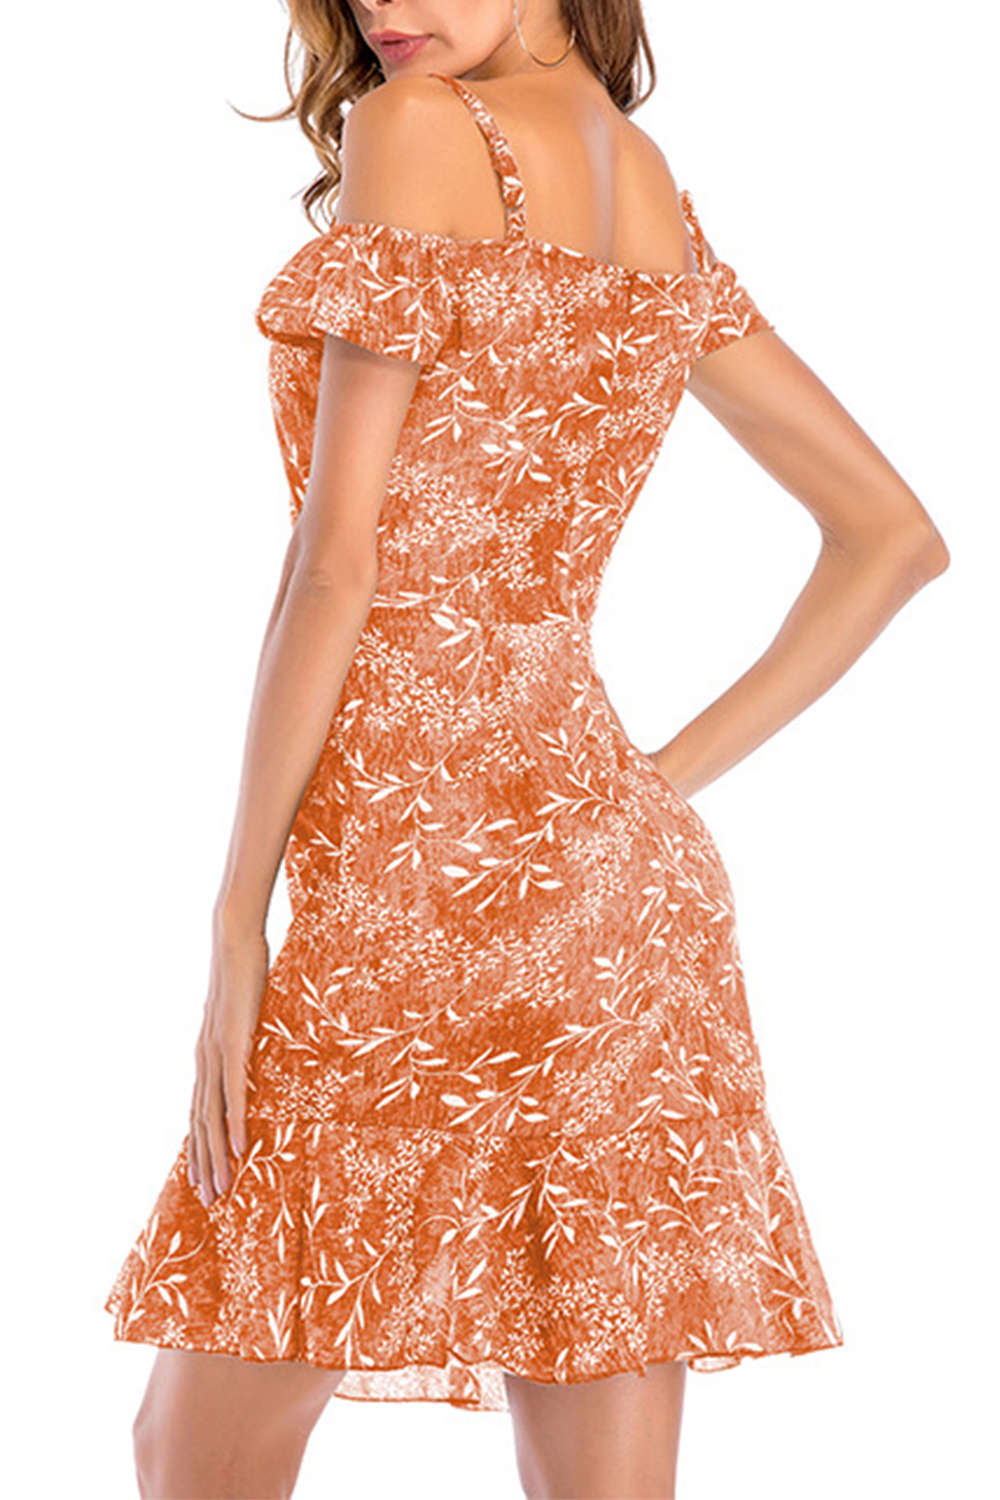 Iyasson Cold-shoulder Shirred Sides Floral Midi Dress